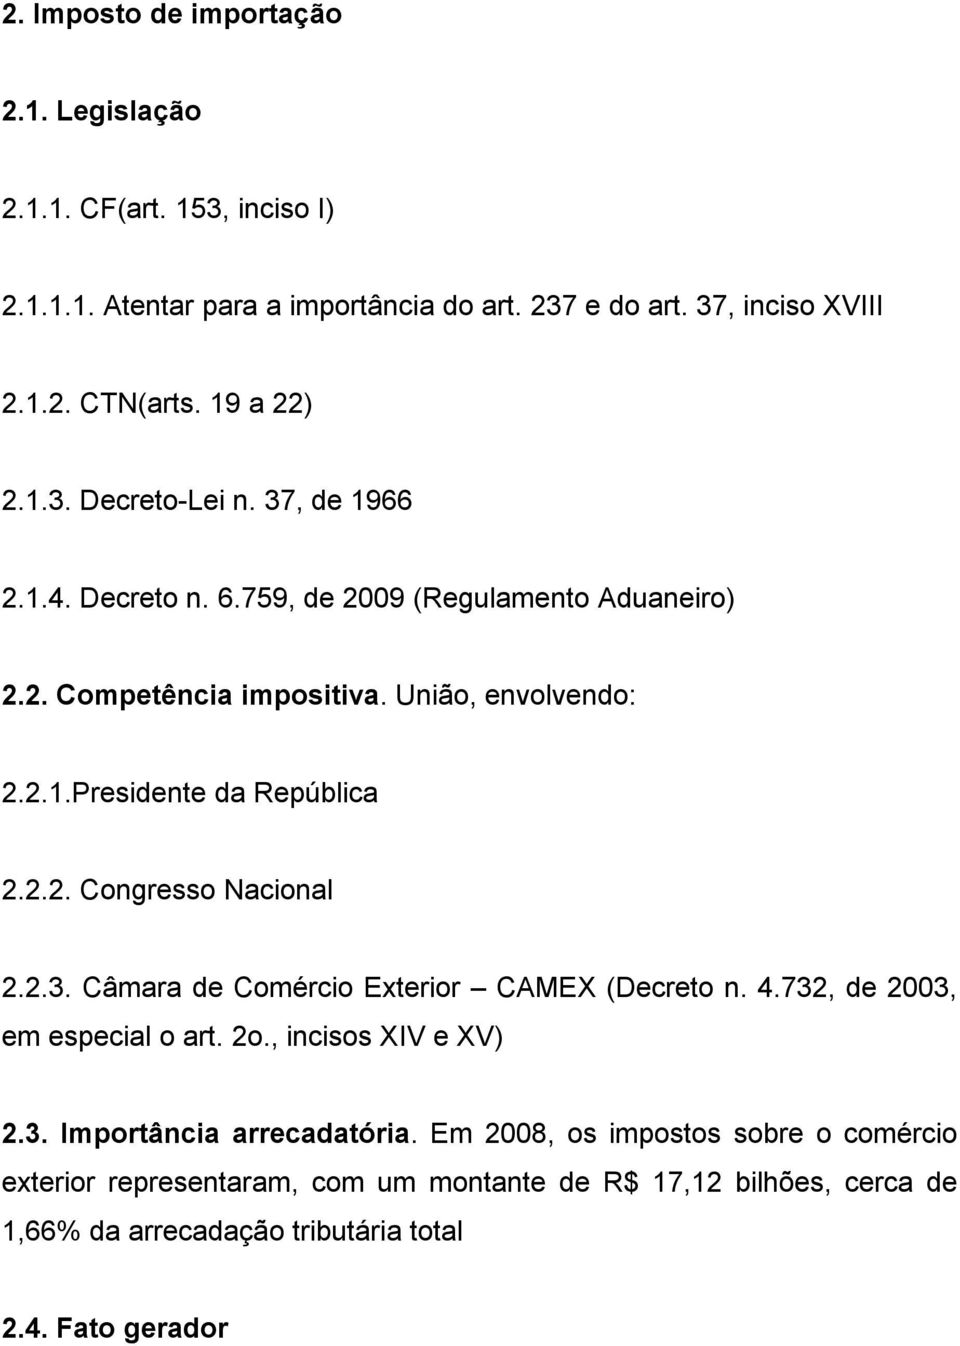 2.2. Congresso Nacional 2.2.3. Câmara de Comércio Exterior CAMEX (Decreto n. 4.732, de 2003, em especial o art. 2o., incisos XIV e XV) 2.3. Importância arrecadatória.